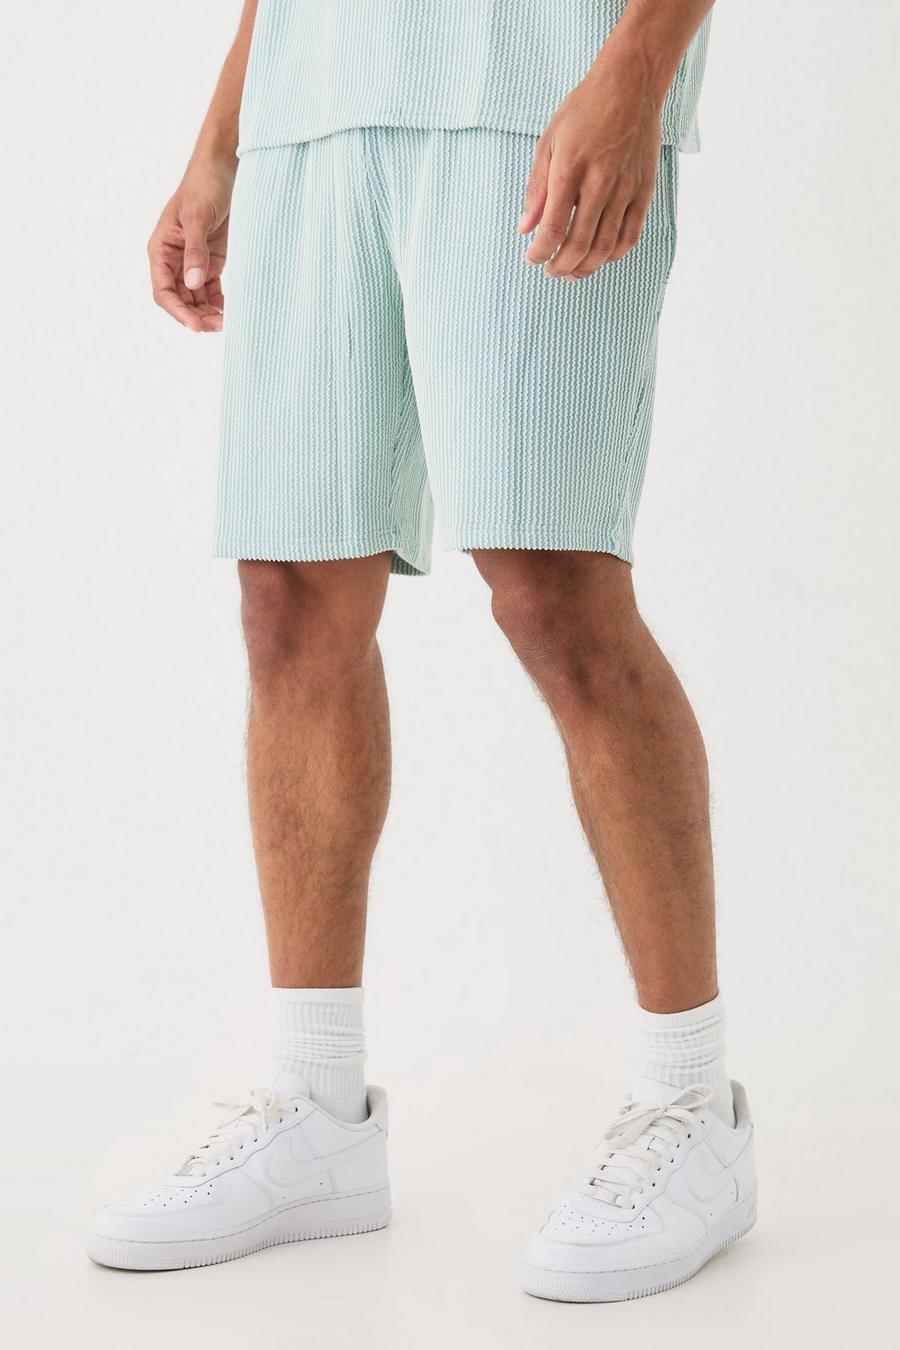 Lockere mittellange strukturierte Shorts mit Streifen, Dusty blue